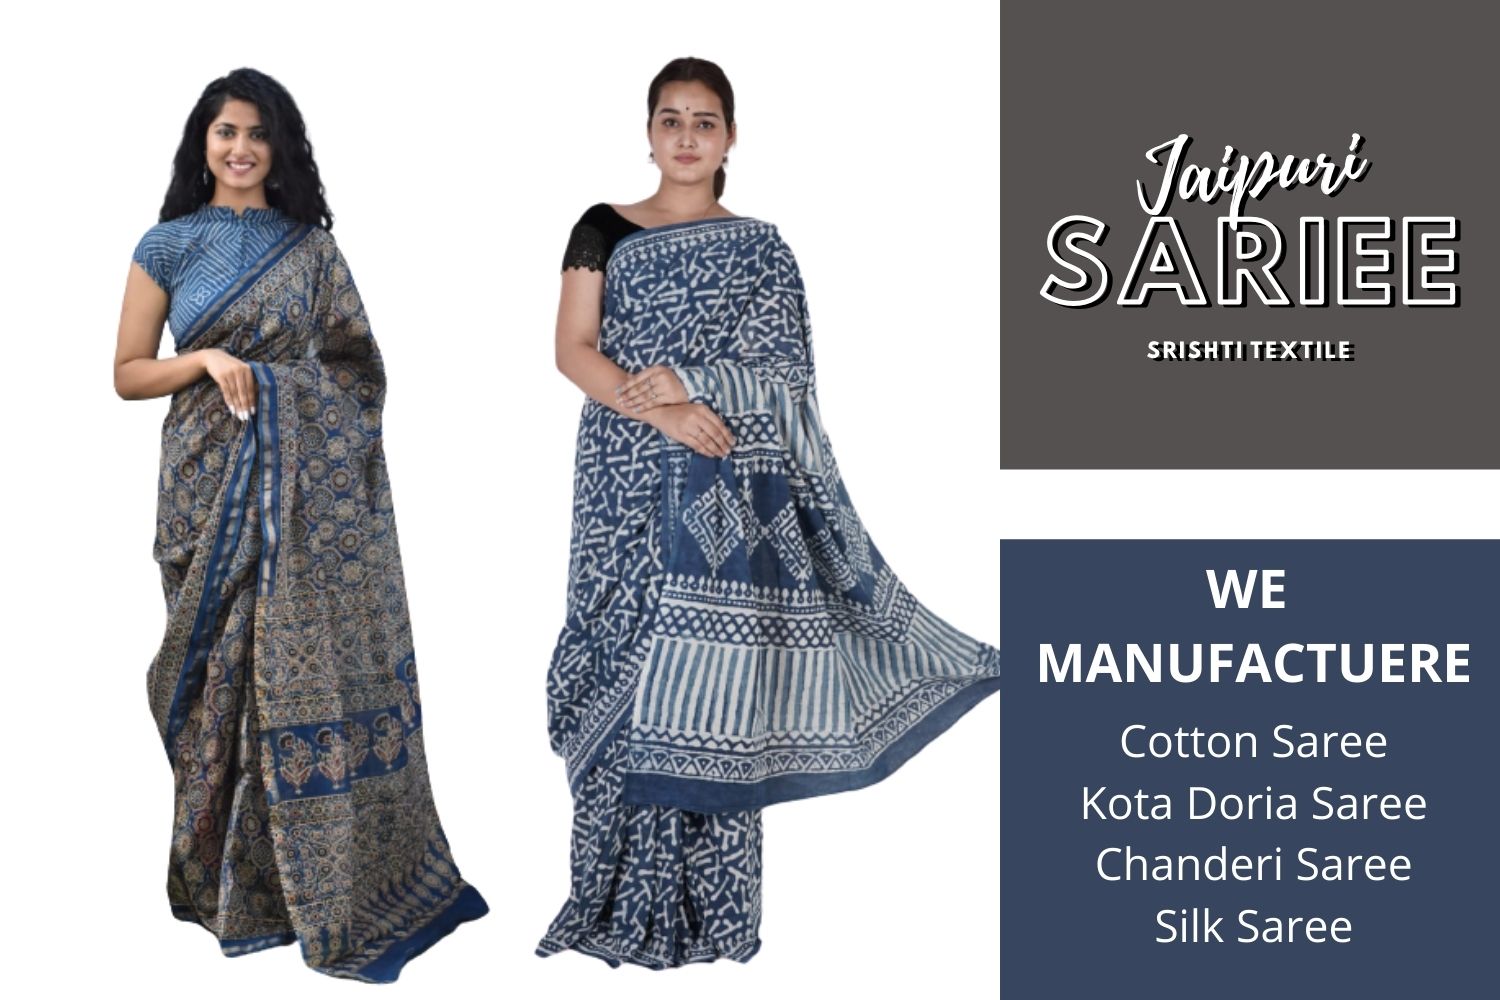 Jaipur Saree Manufacturers